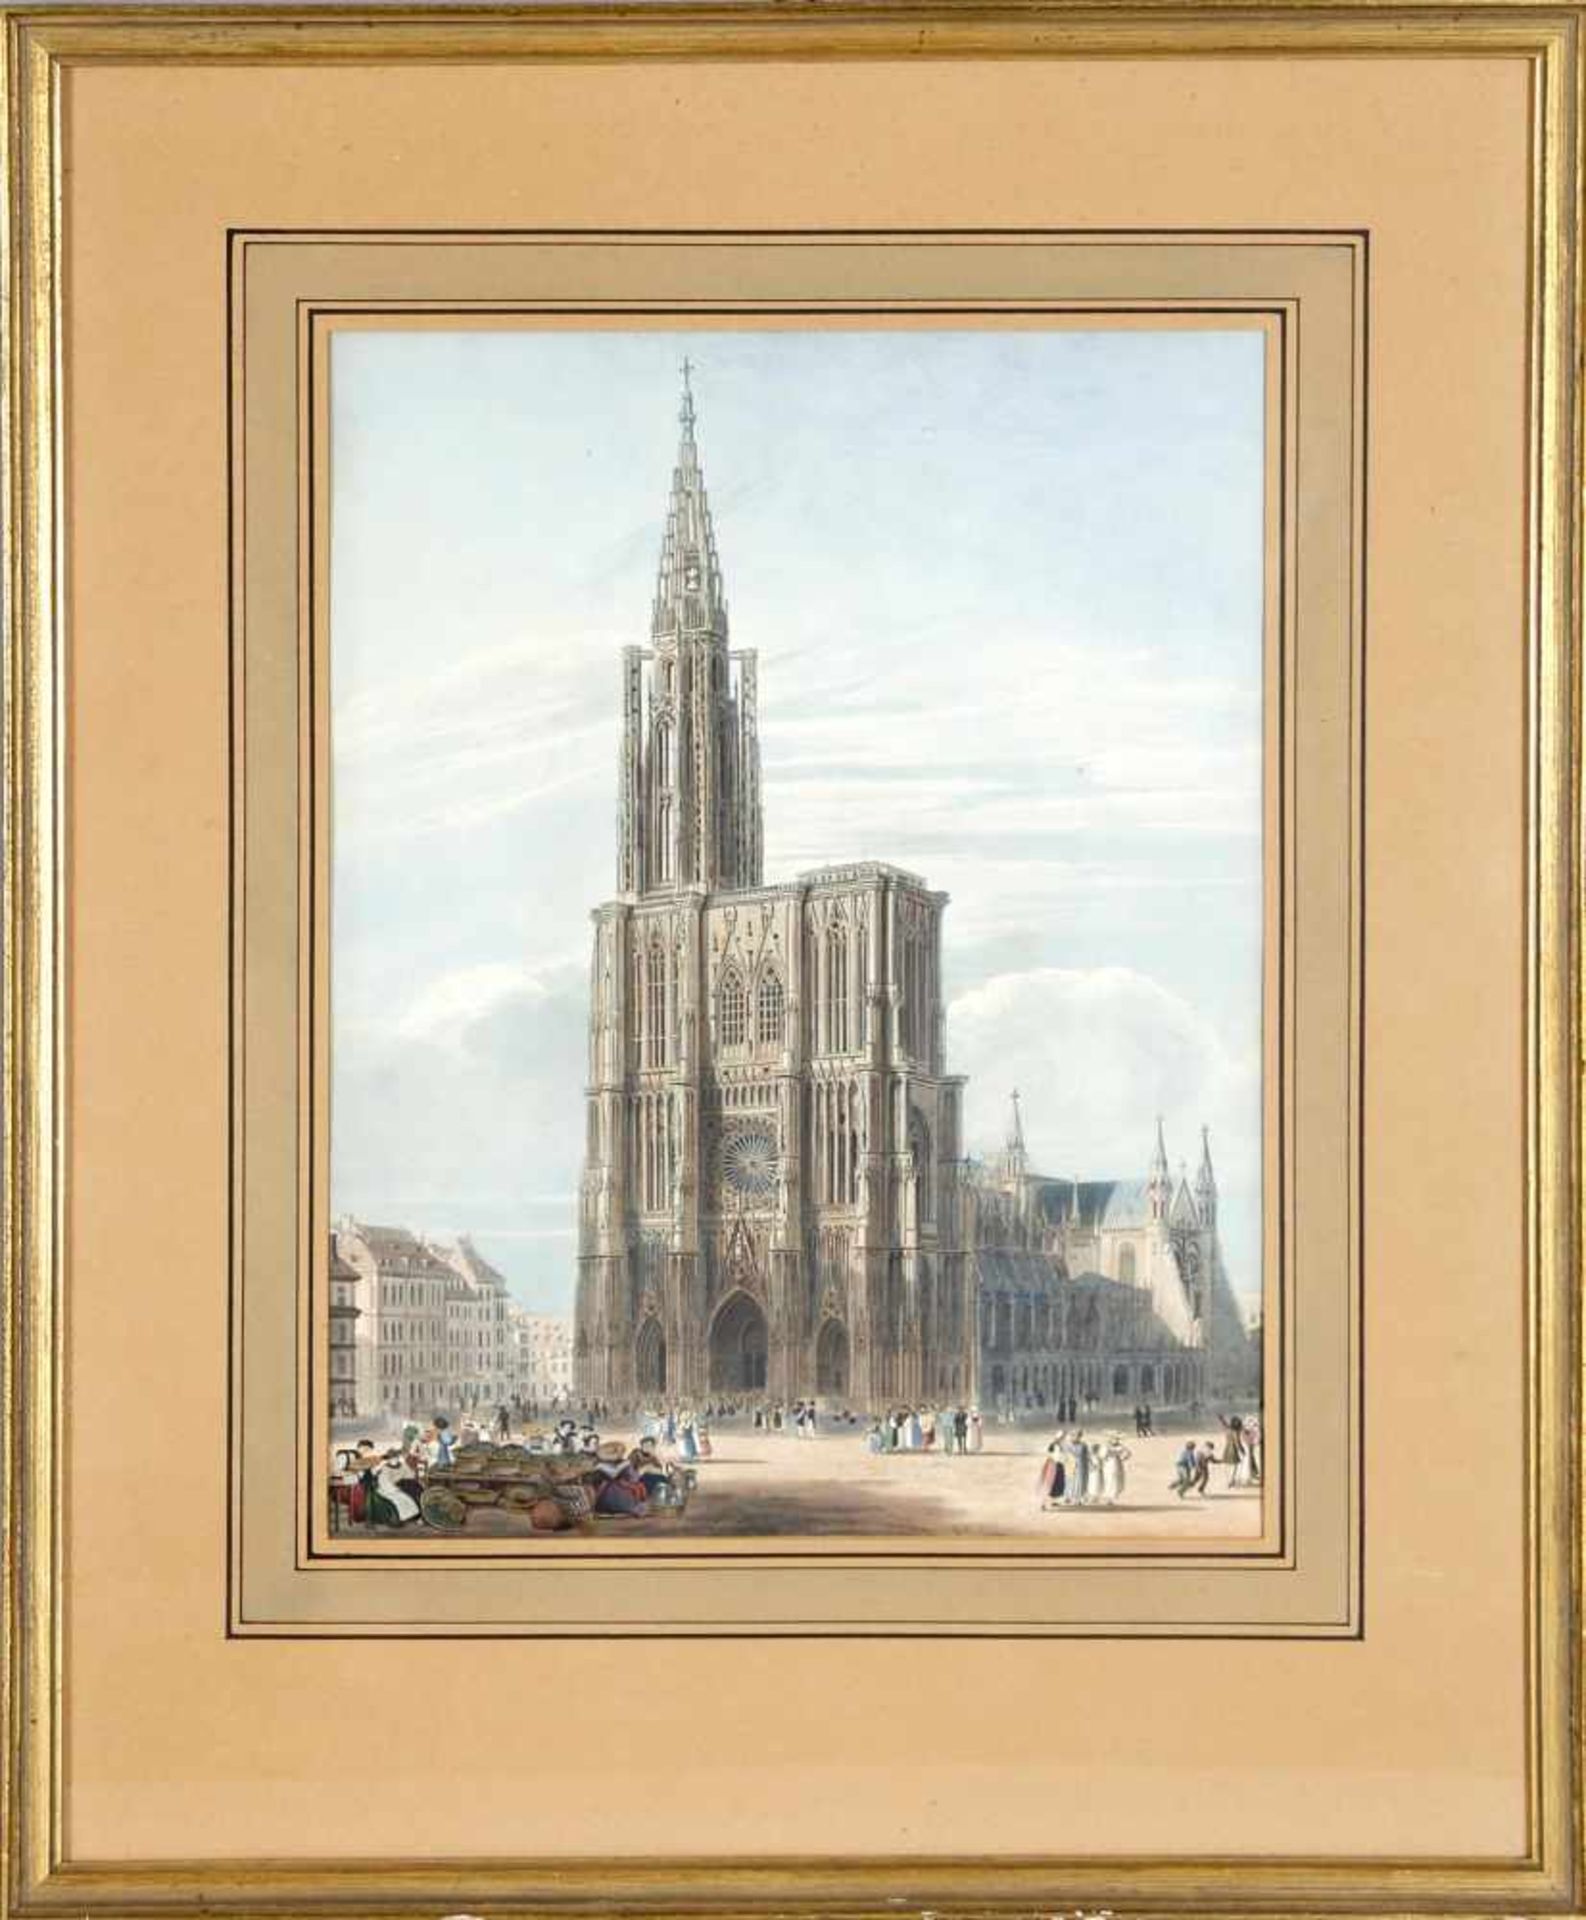 Charles Wild (1781-1835)Blick auf das Straßburger Münster, Farbgrafik, um 1820-30, 36 x 27,8 cm,